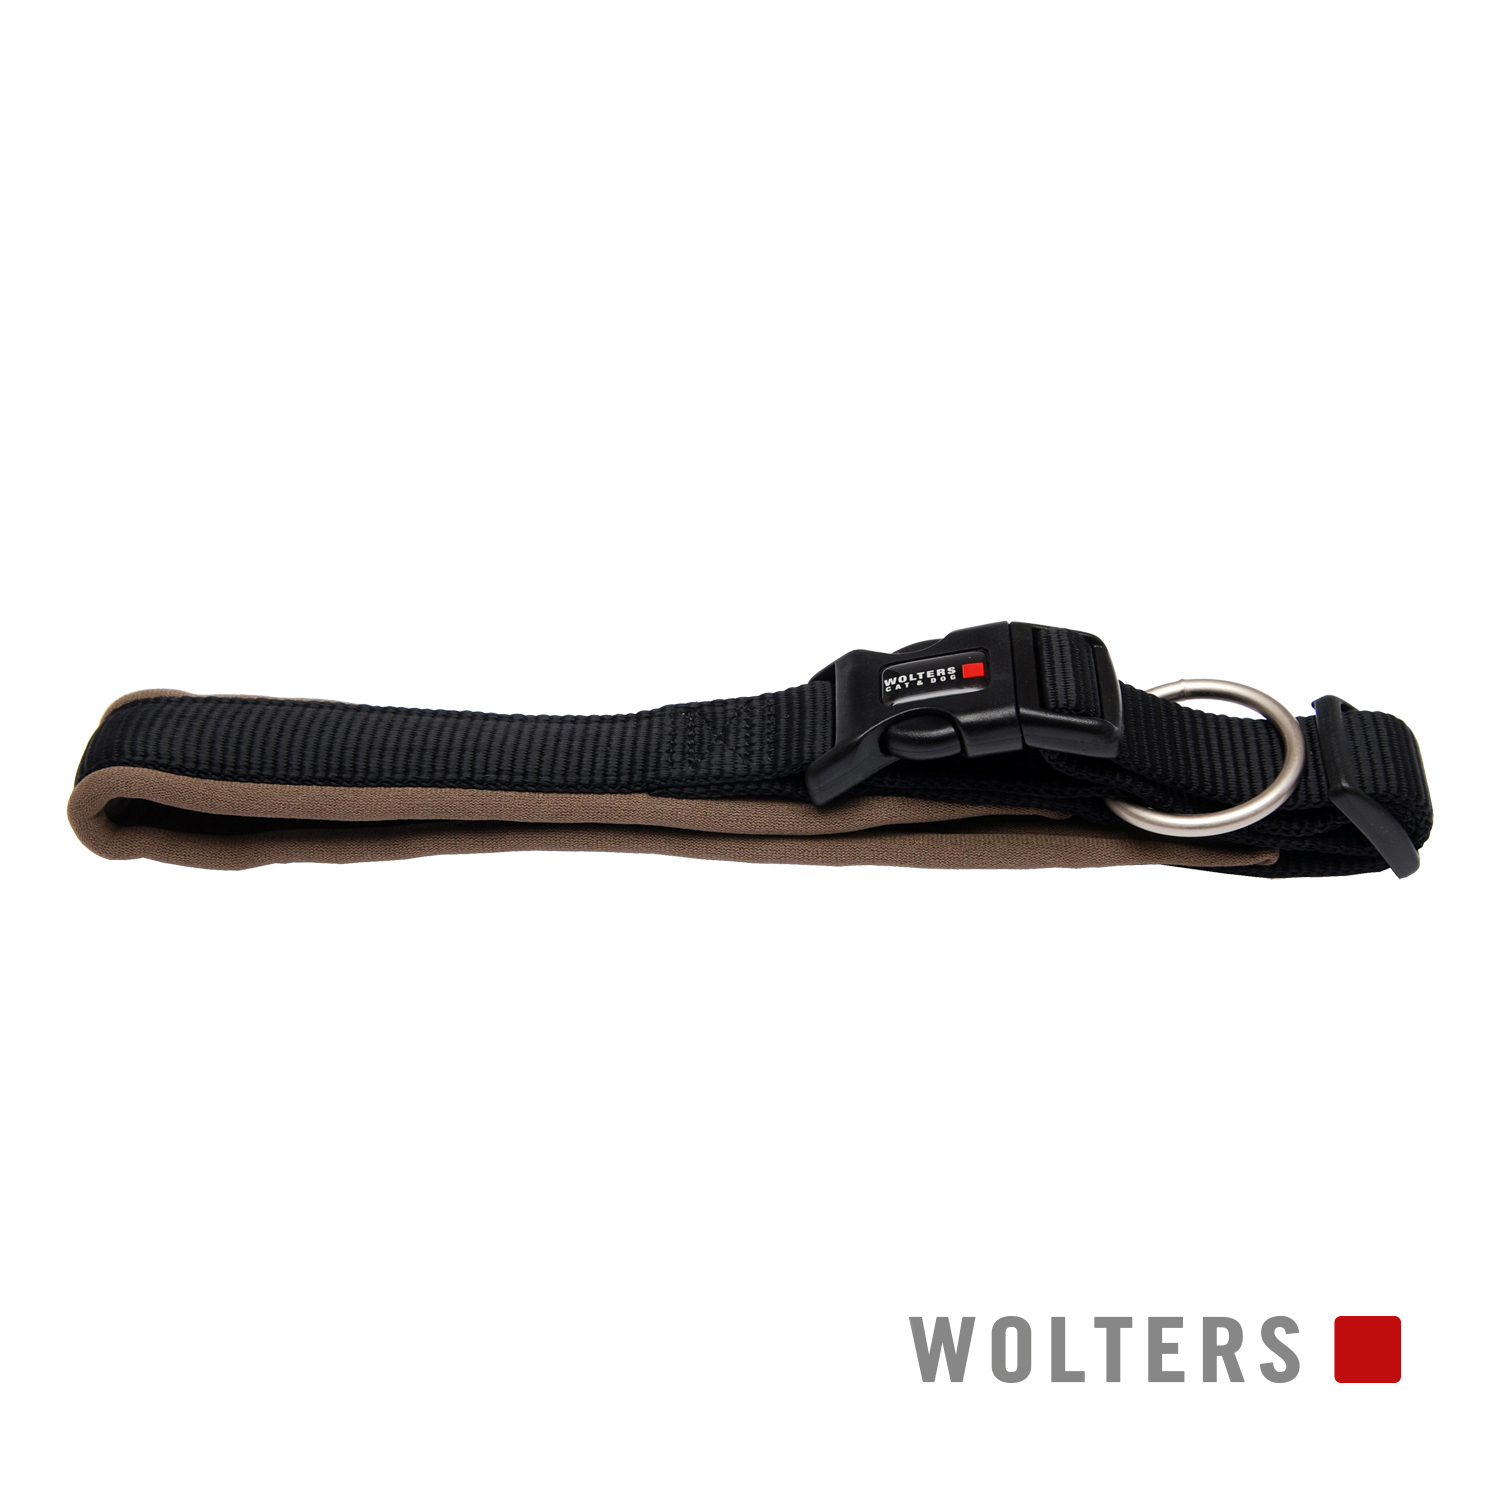 Wolters Halsband Professional Comfort Schwarz/Braun 30-35cm x 25mm